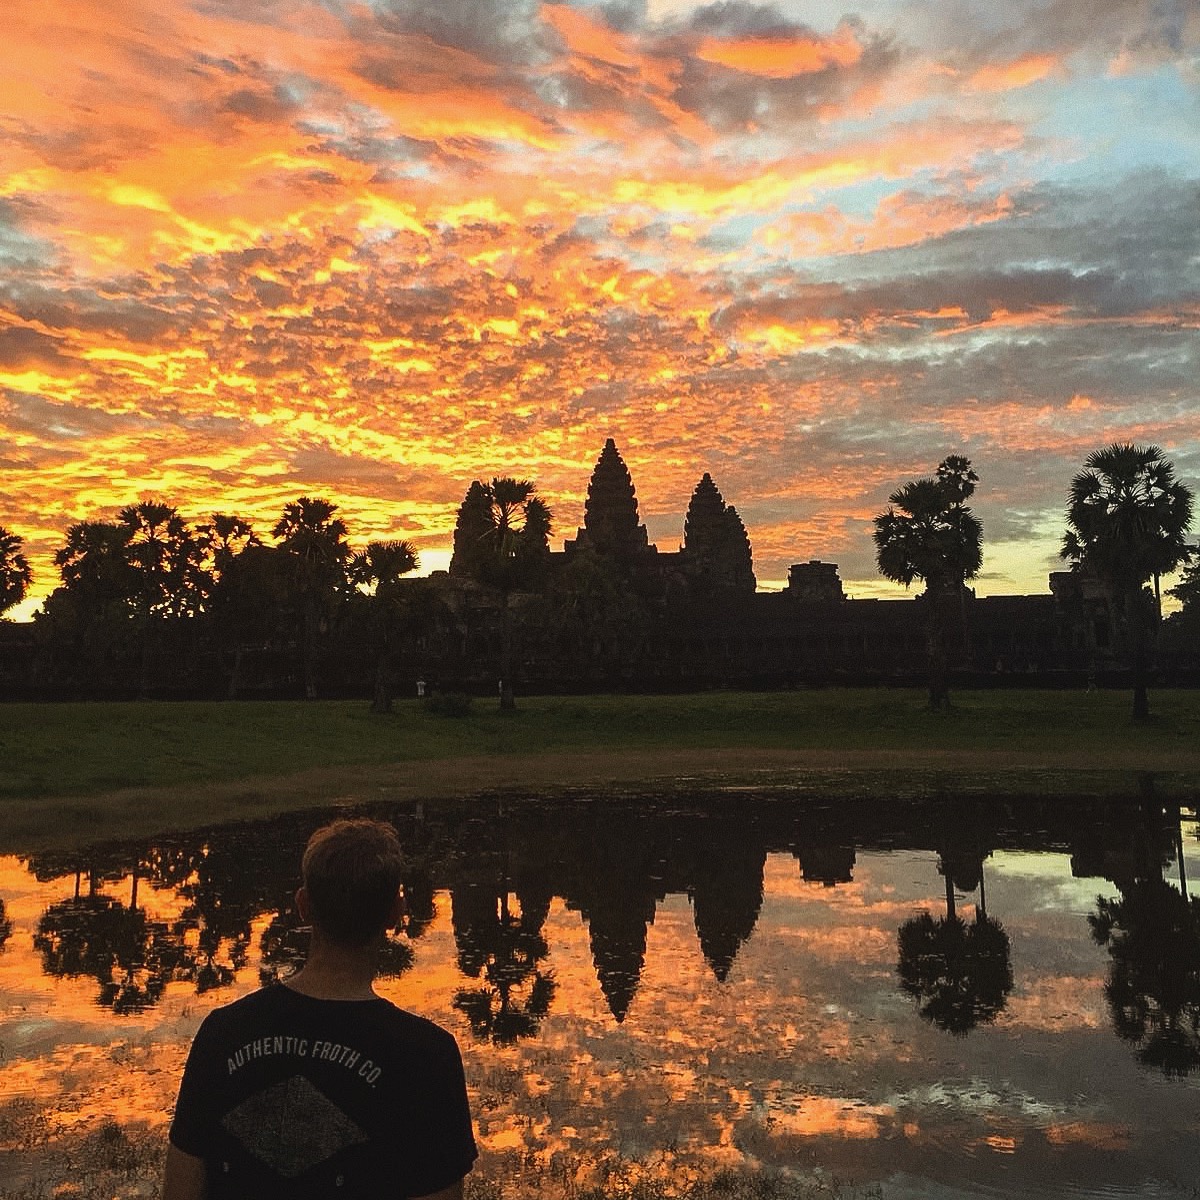 angkor wat sunrise tour cambodia, angkor wat entrance fee